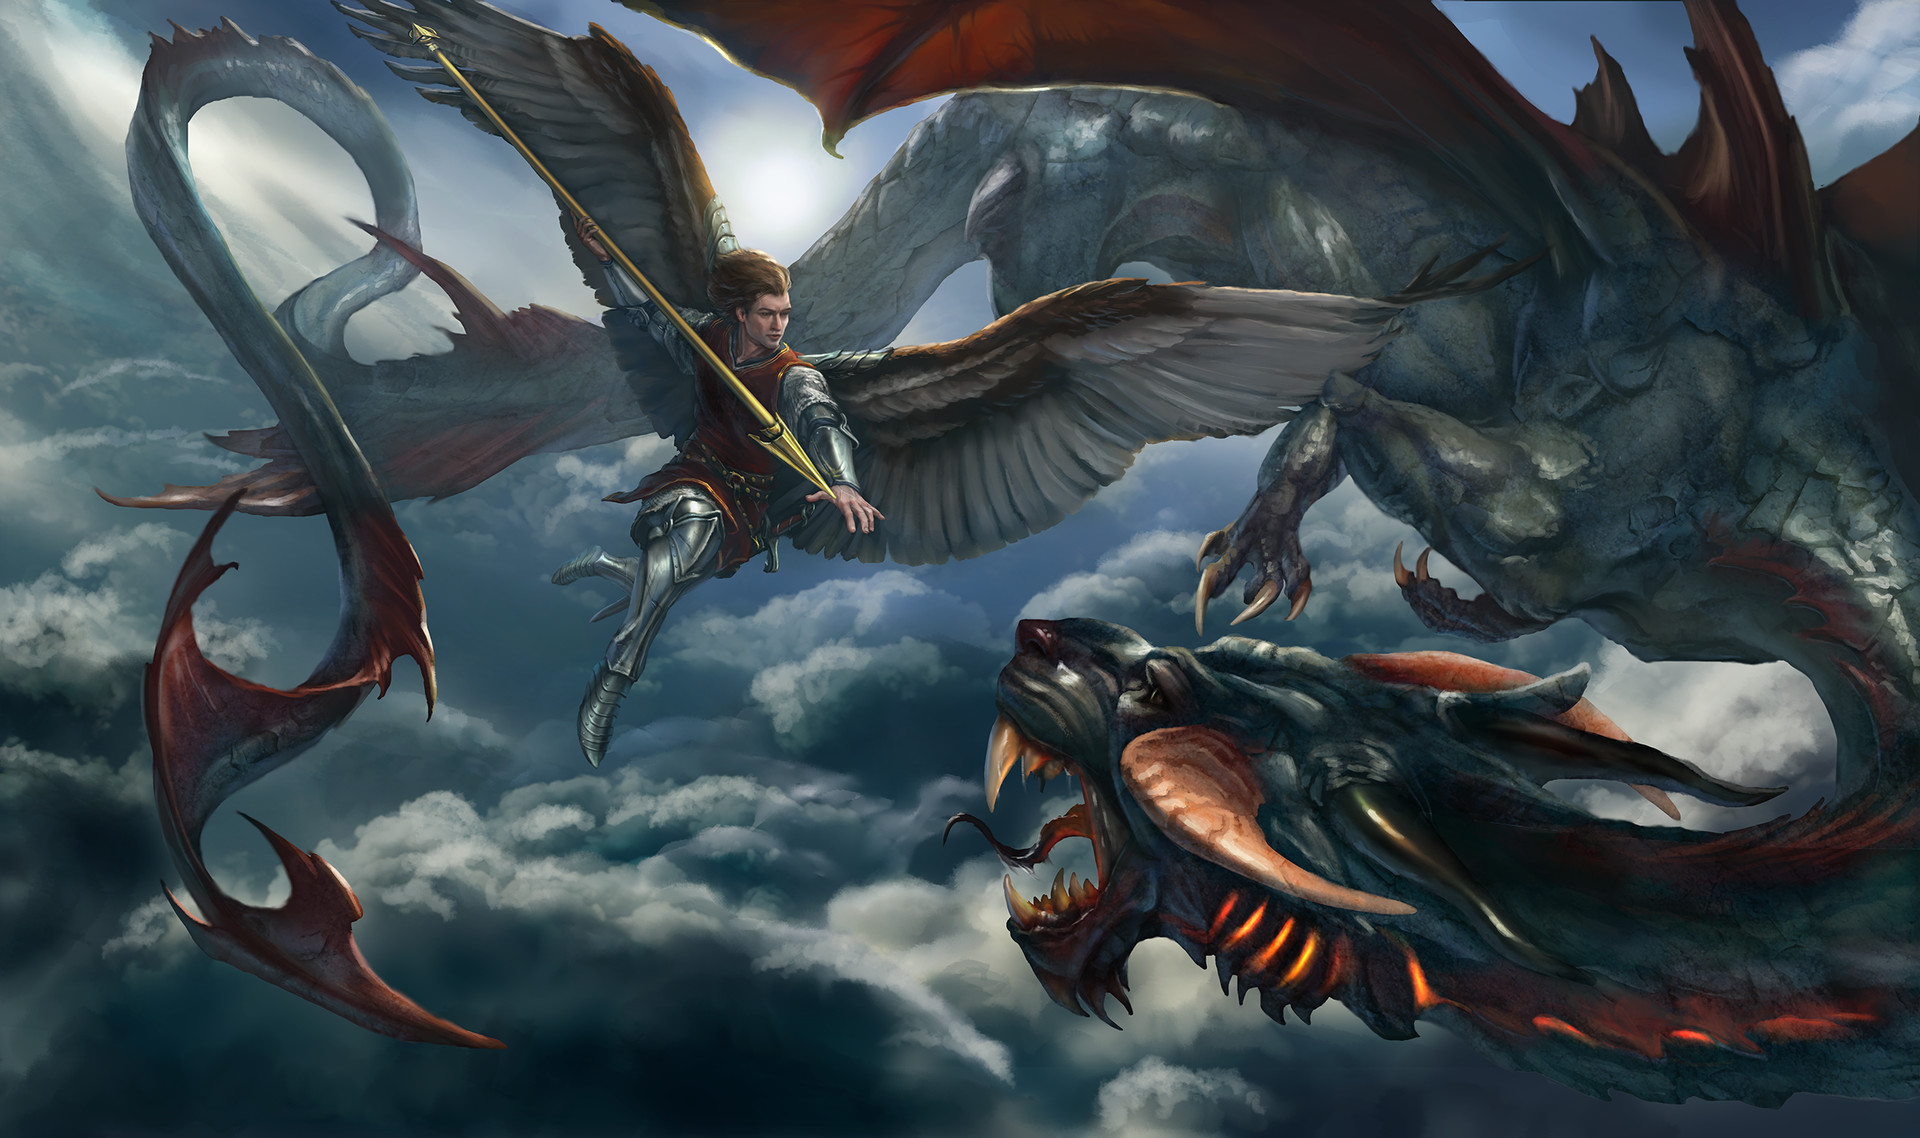 Saint Michael vs Dragon by Tatiana Yamshanova